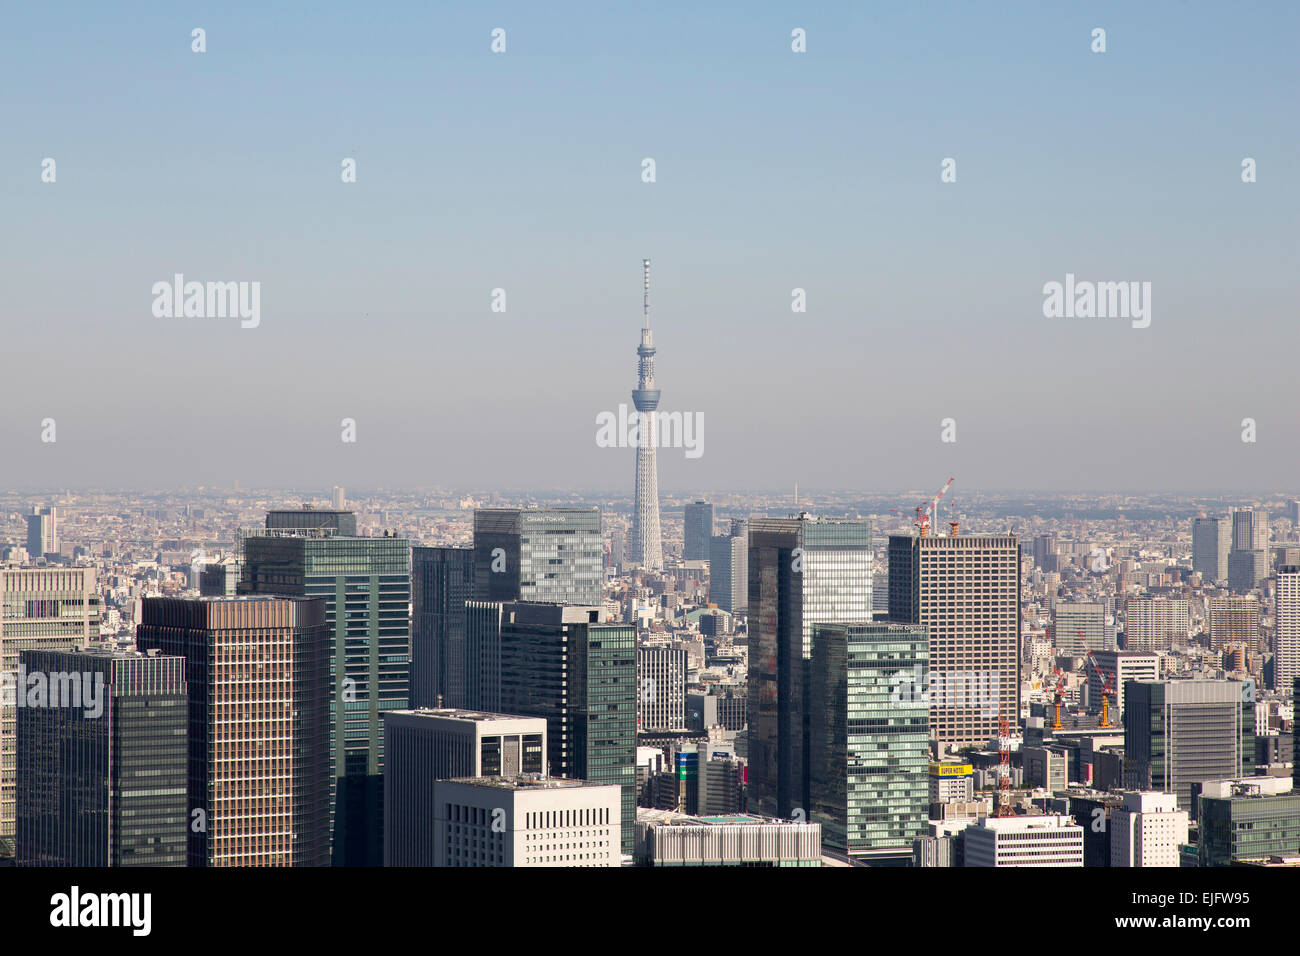 Blick auf Tokio Stadtbild von Toranomon Hills Tower mit Skytree Munitionslagern Turm. Tokyo Stadtbild 2014, Tokio, Japan. Archite Stockfoto